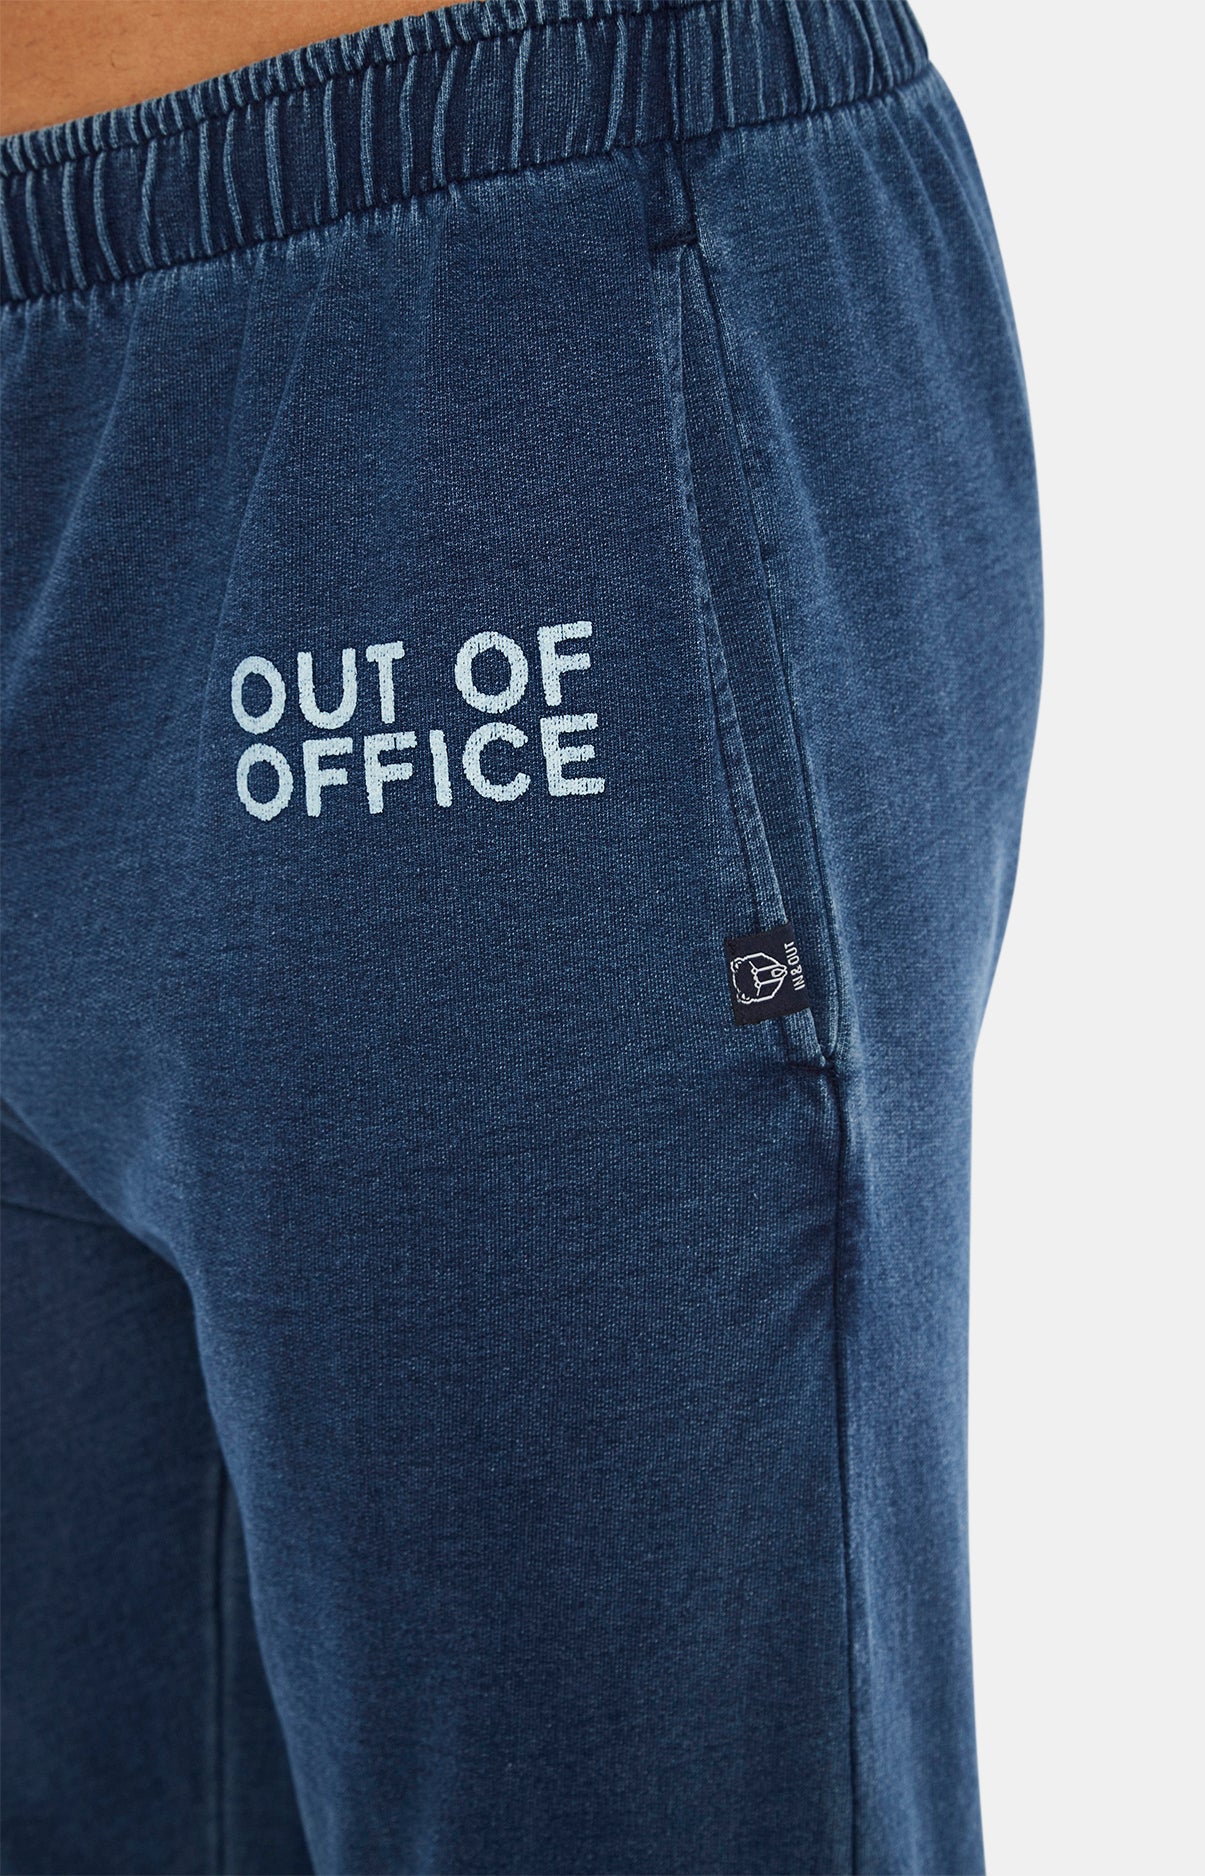 Pantalon de Jogging Out-of-Office Denim 5